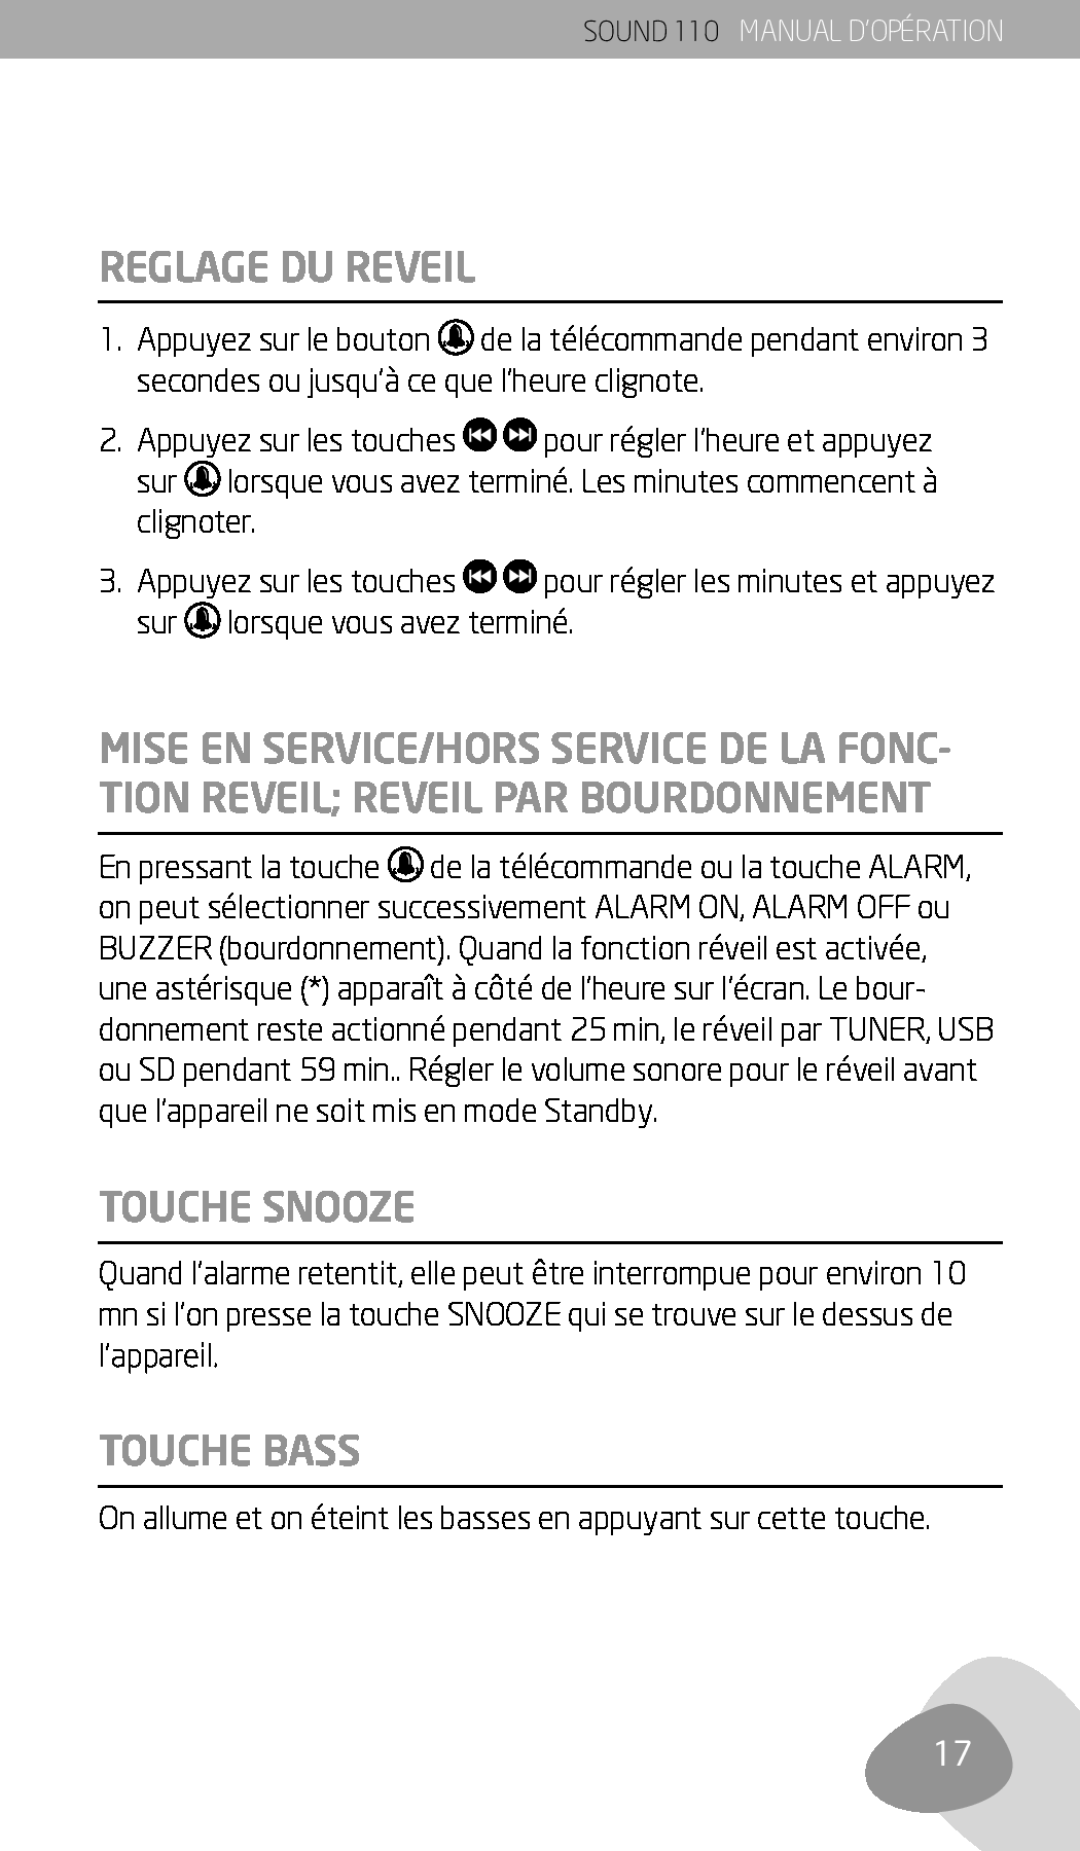 Eton 110 owner manual Reglage Du Reveil, Touche Snooze, Touche Bass 